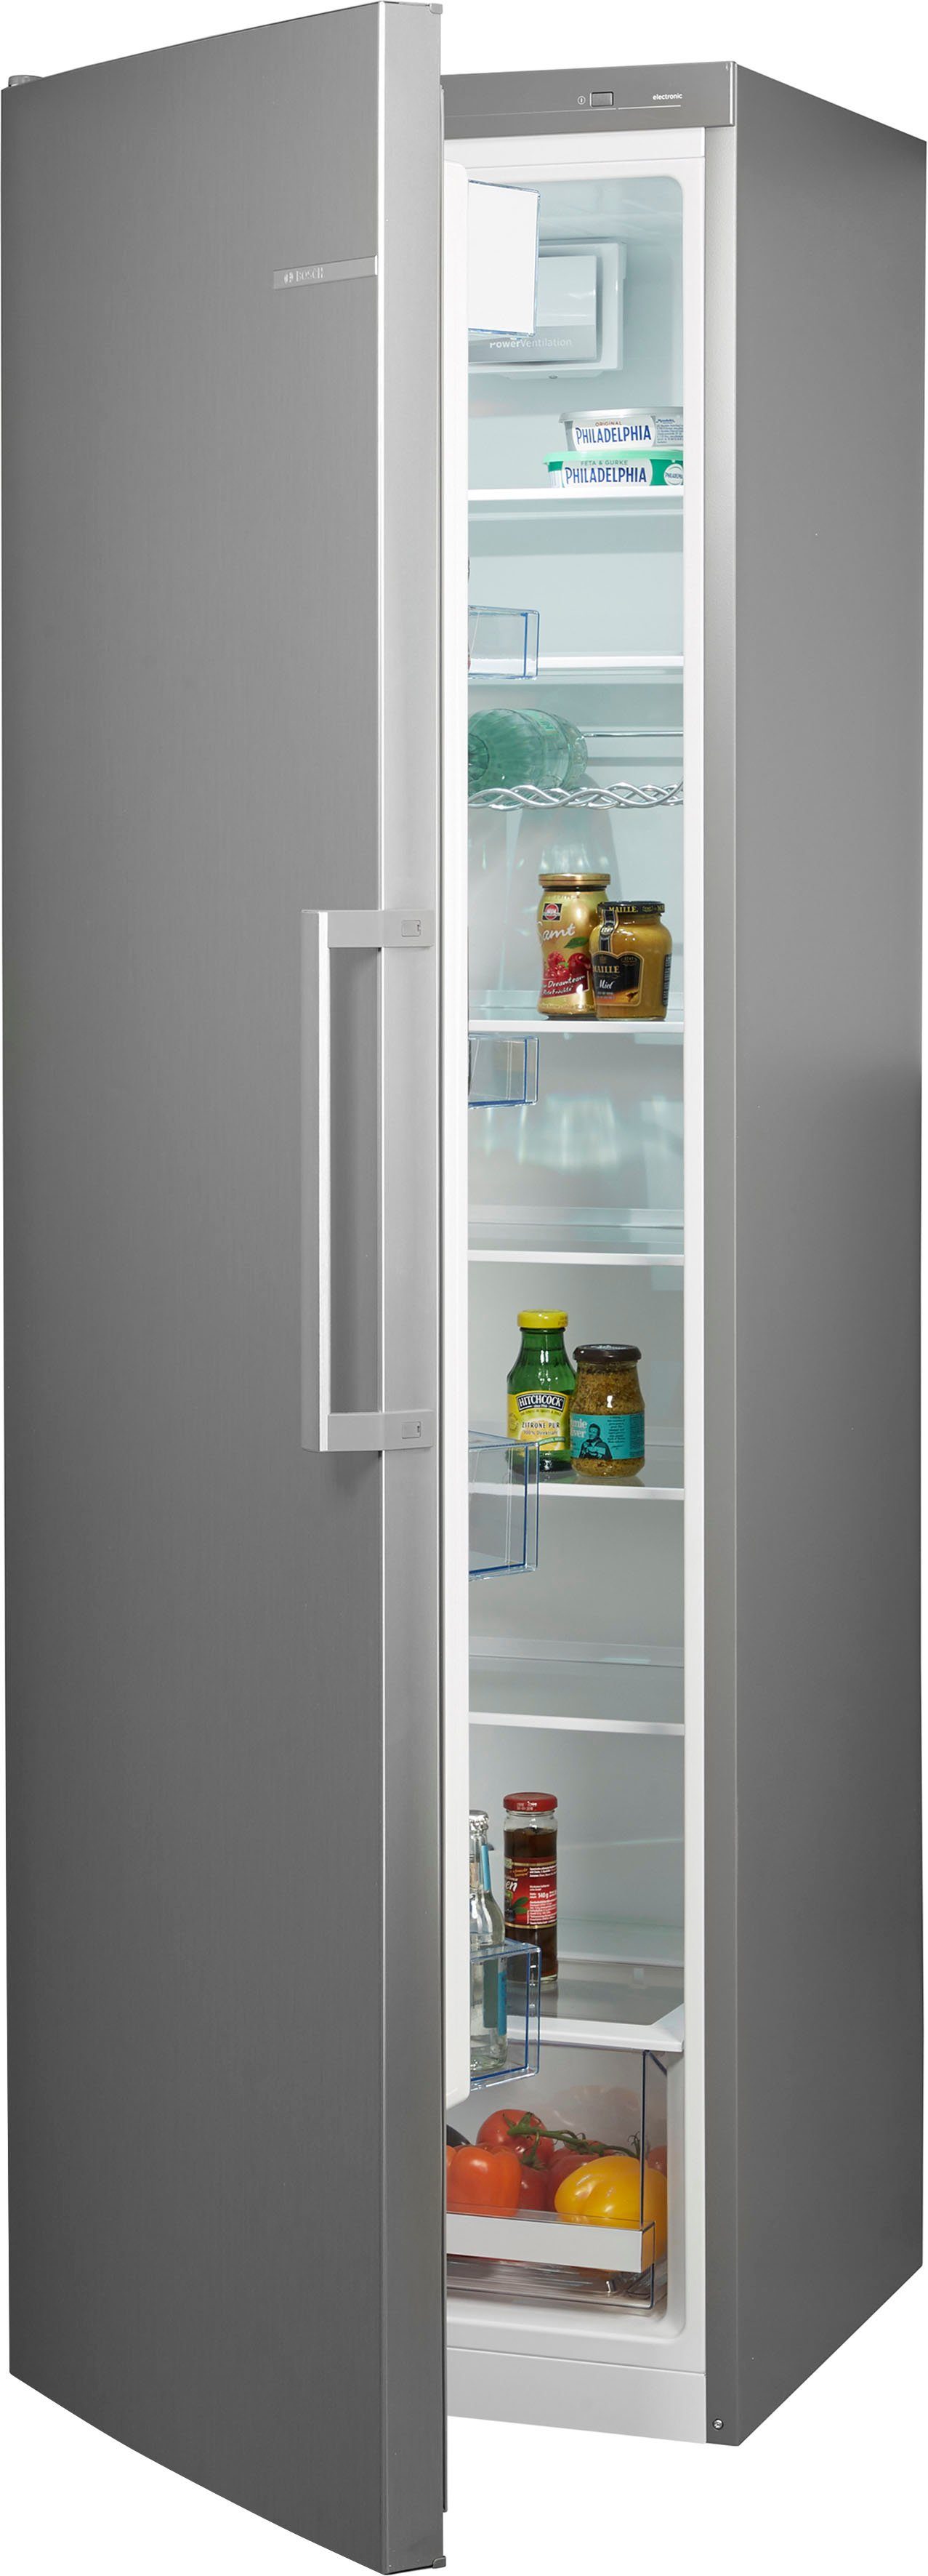 BOSCH Kühlschrank 4 KSV36VLEP, 186 cm hoch, 60 cm breit online kaufen | OTTO